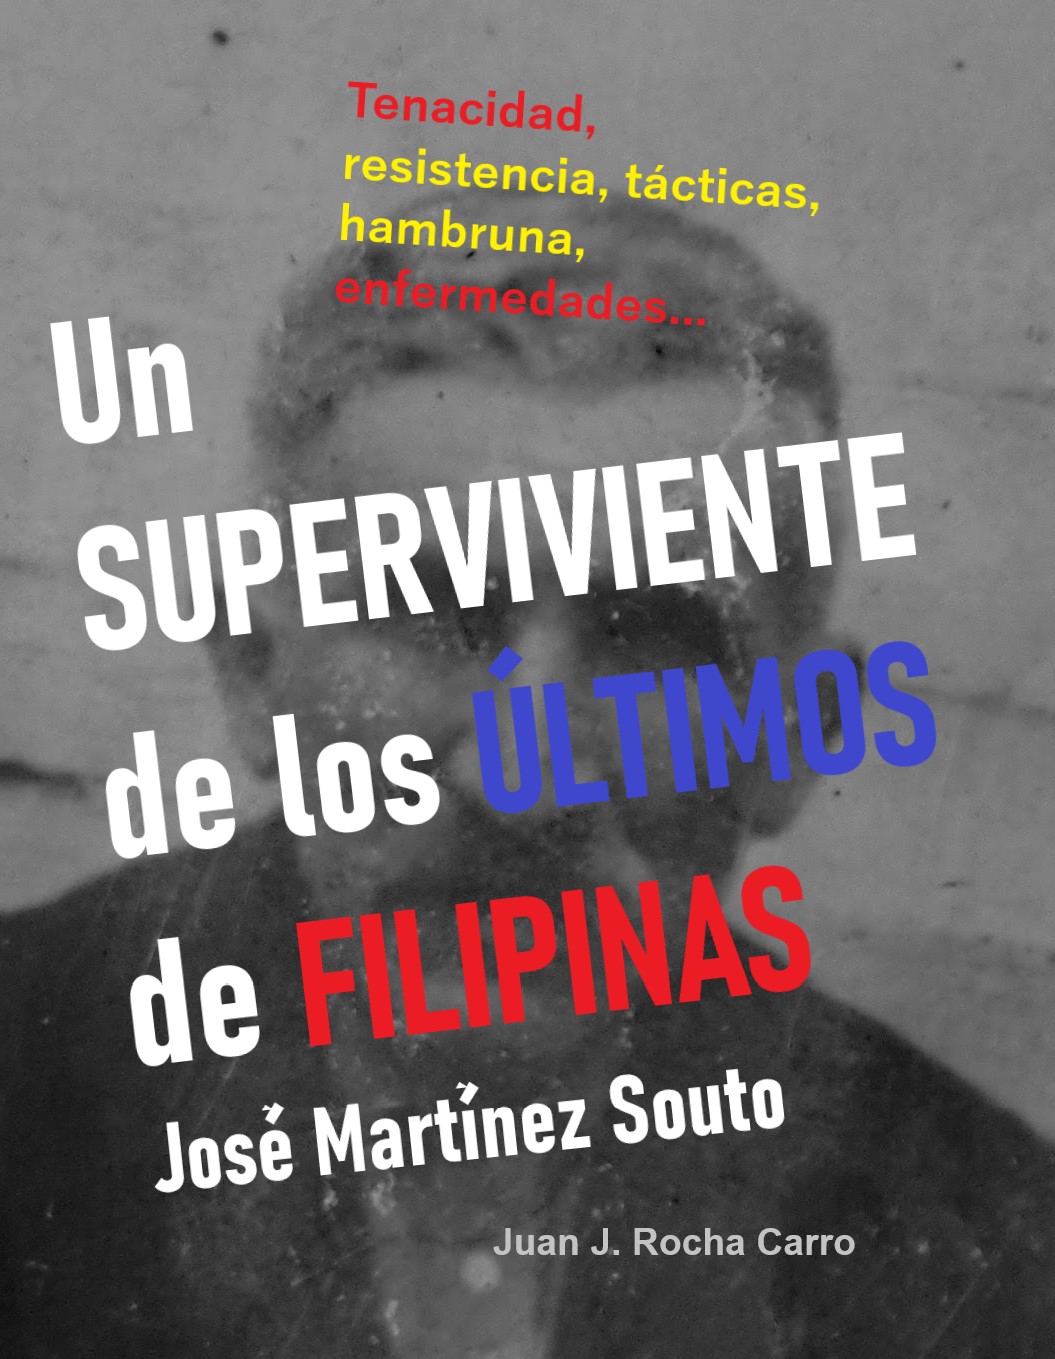 En Ebook e Libro de tapa blanda: UN SUPERVIVIENTE DE LOS ÚLTIMOS DE FILIPINAS. José Martínez Souto